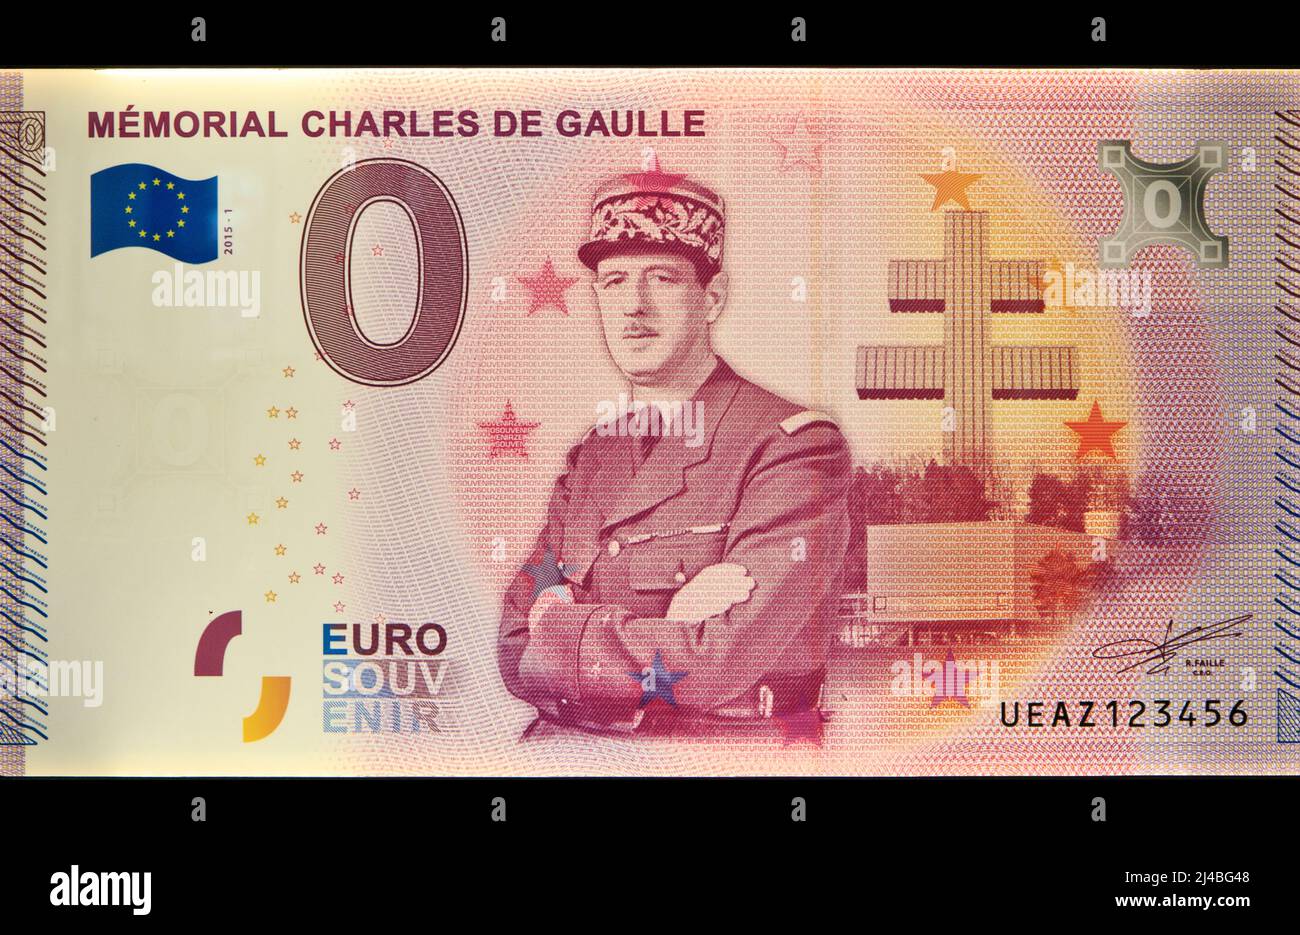 Der französische Präsident Charles de Gaulle (1890-1970) auf einer 500-Euro-Banknote/Souvenir im Charles de Gaulle-Denkmal in Colombey-les-Deux-Eglises, Frankreich Stockfoto